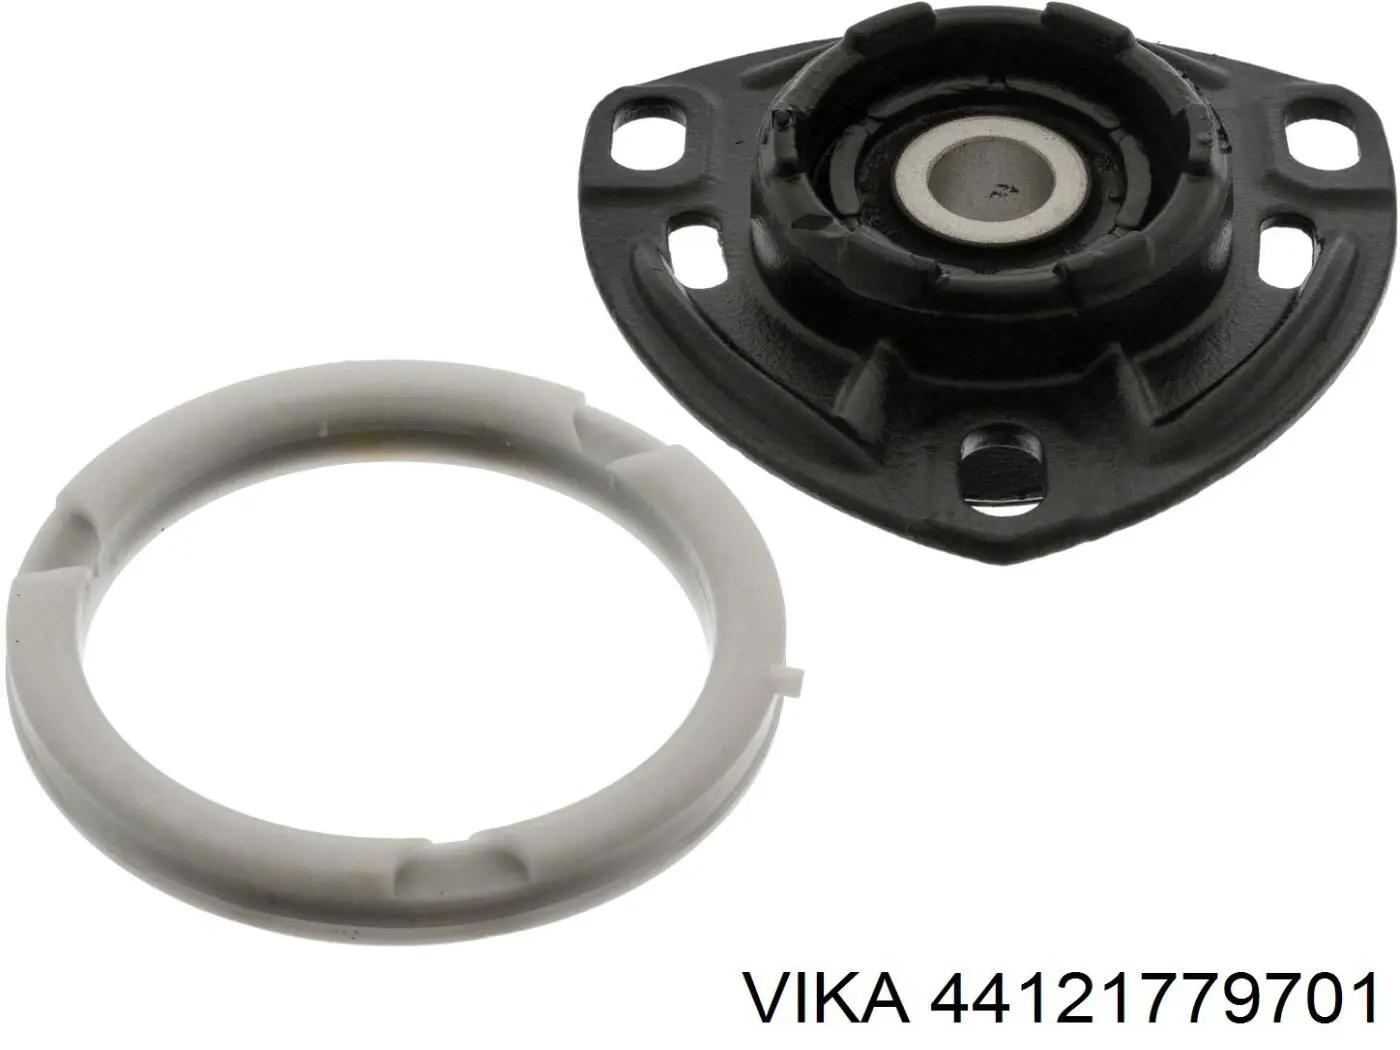 44121779701 Vika soporte amortiguador delantero